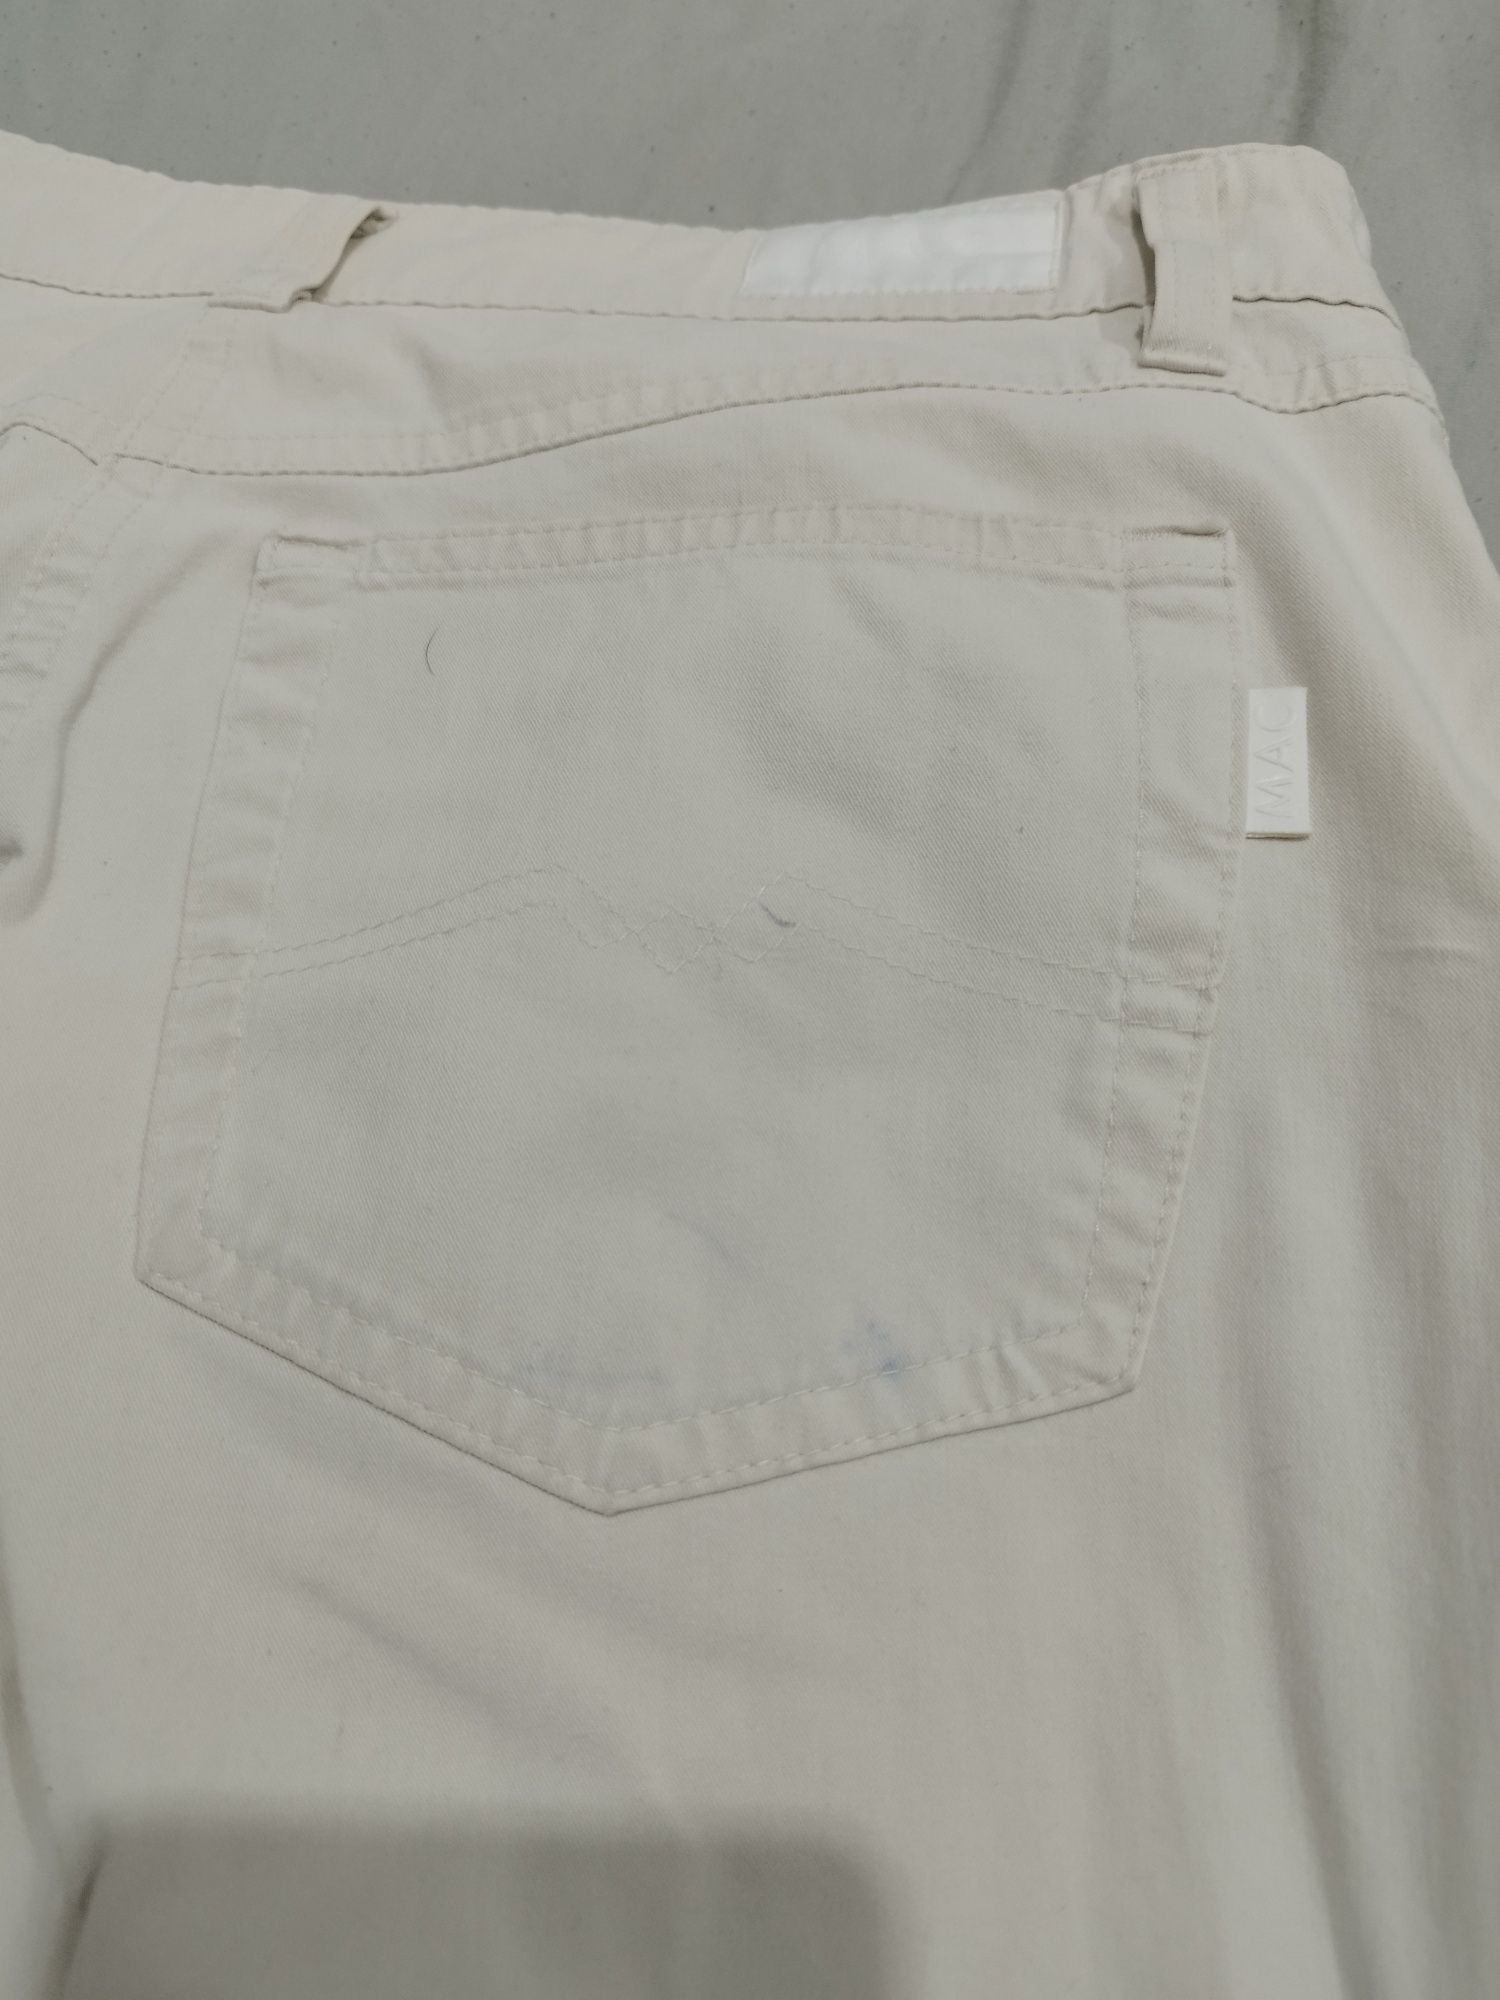 Białe/kremowe spodnie męskie